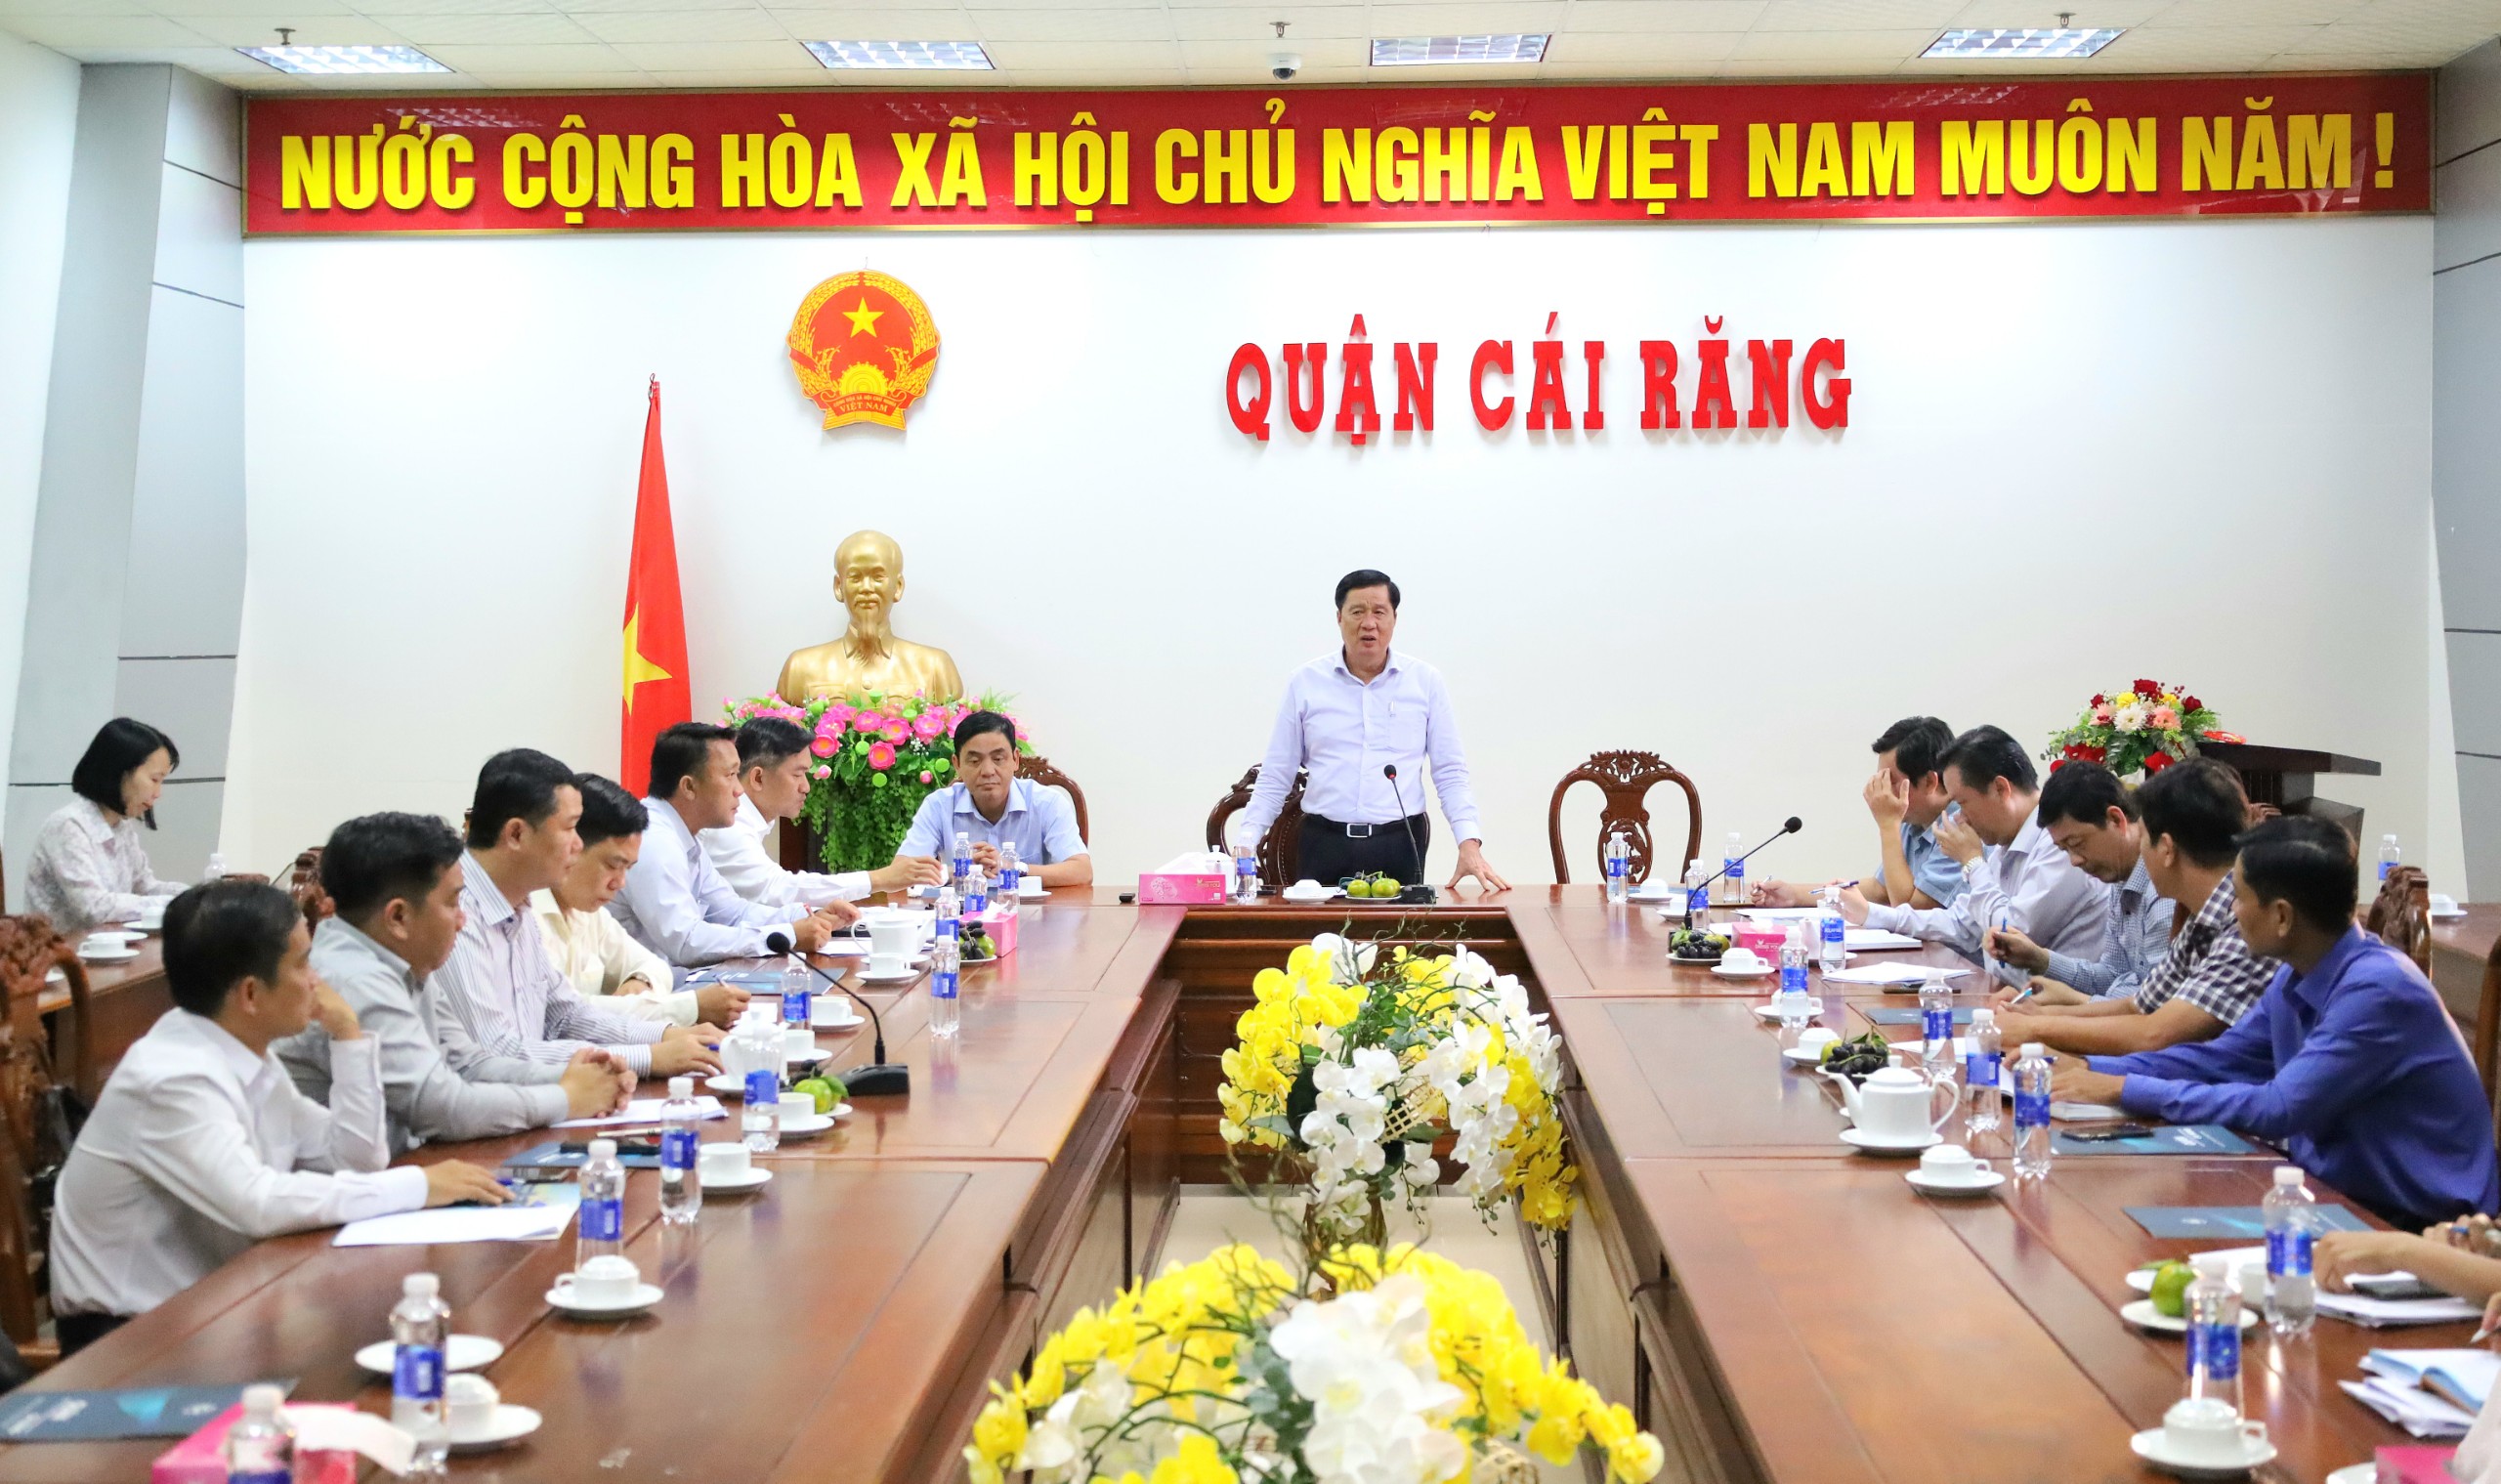 Đoàn lãnh đạo Thành ủy Cần Thơ làm việc tại UBND quận Cái Răng.